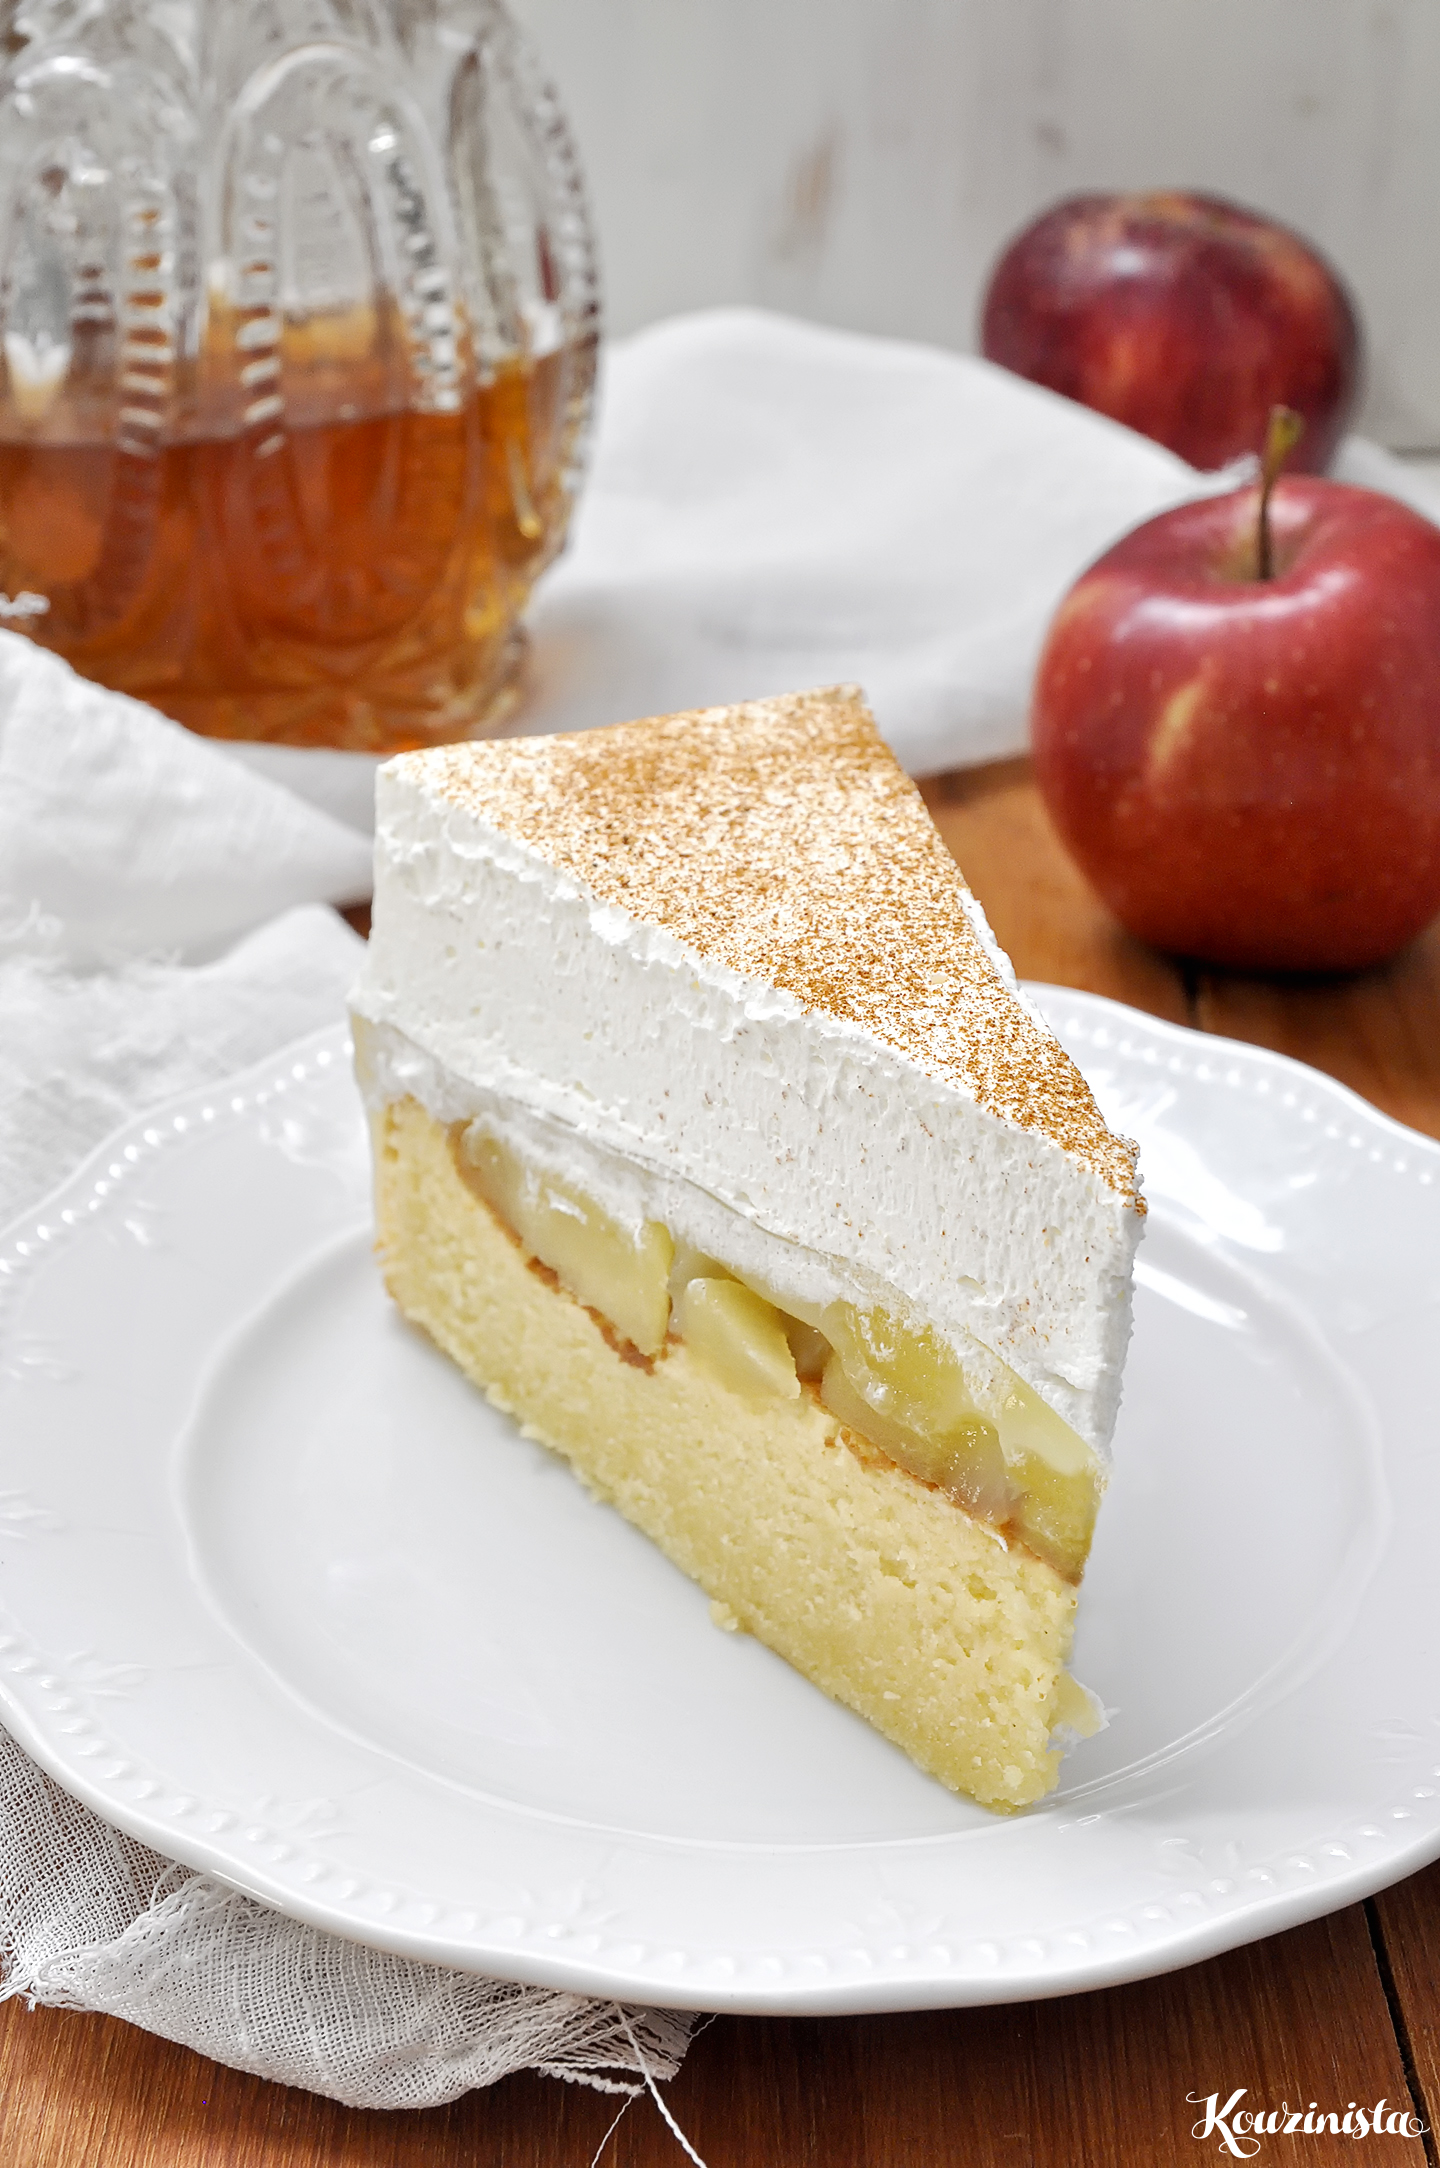 Δροσερή τούρτα με μήλα ή ροδάκινα / Apple pudding cake